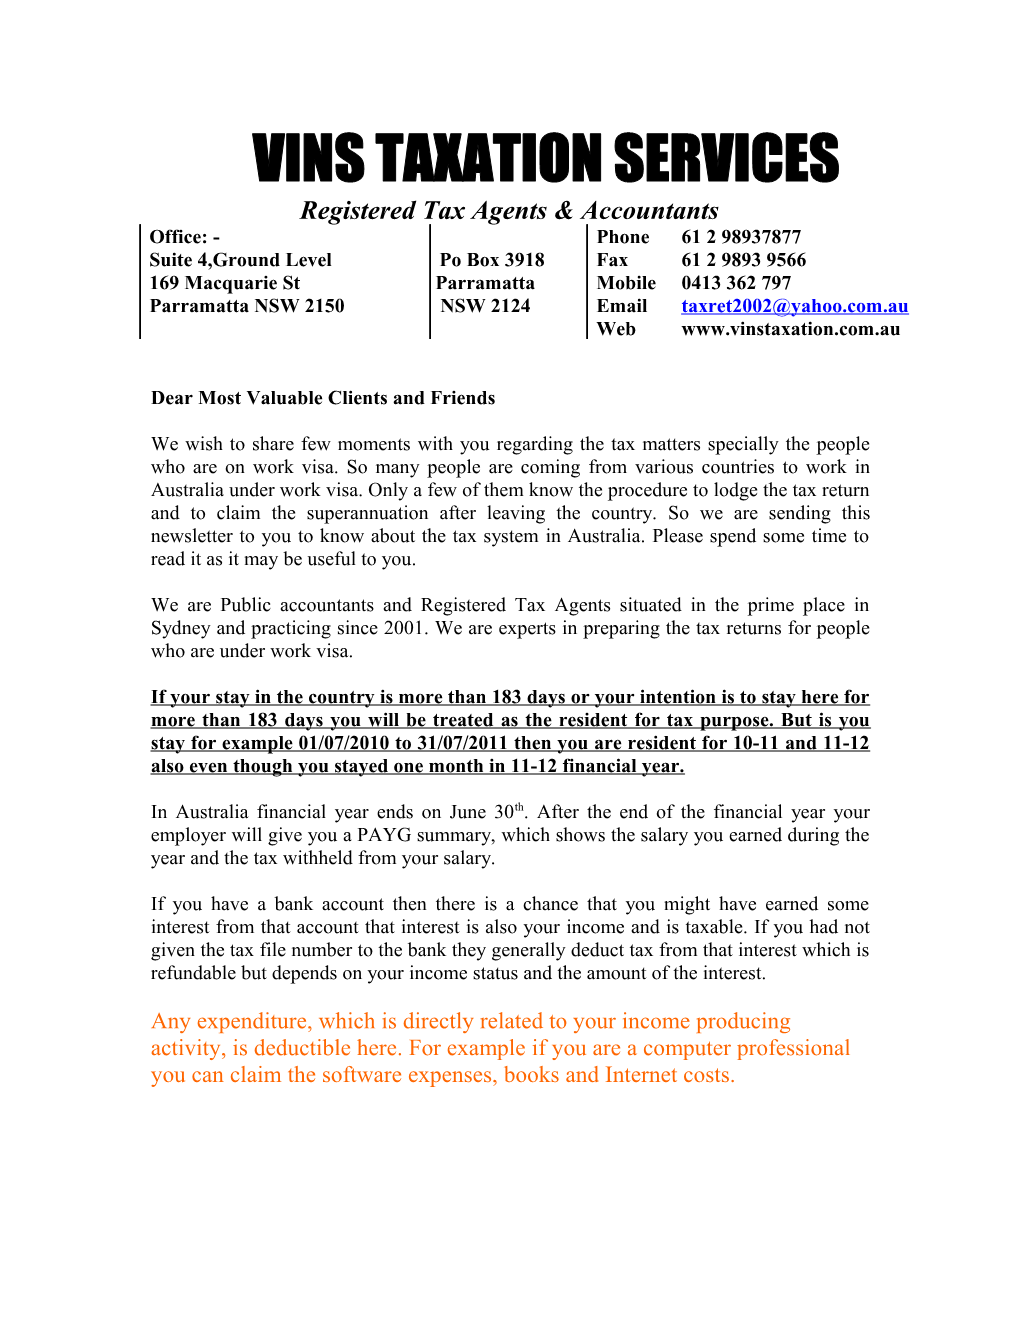 Vins Taxation Services